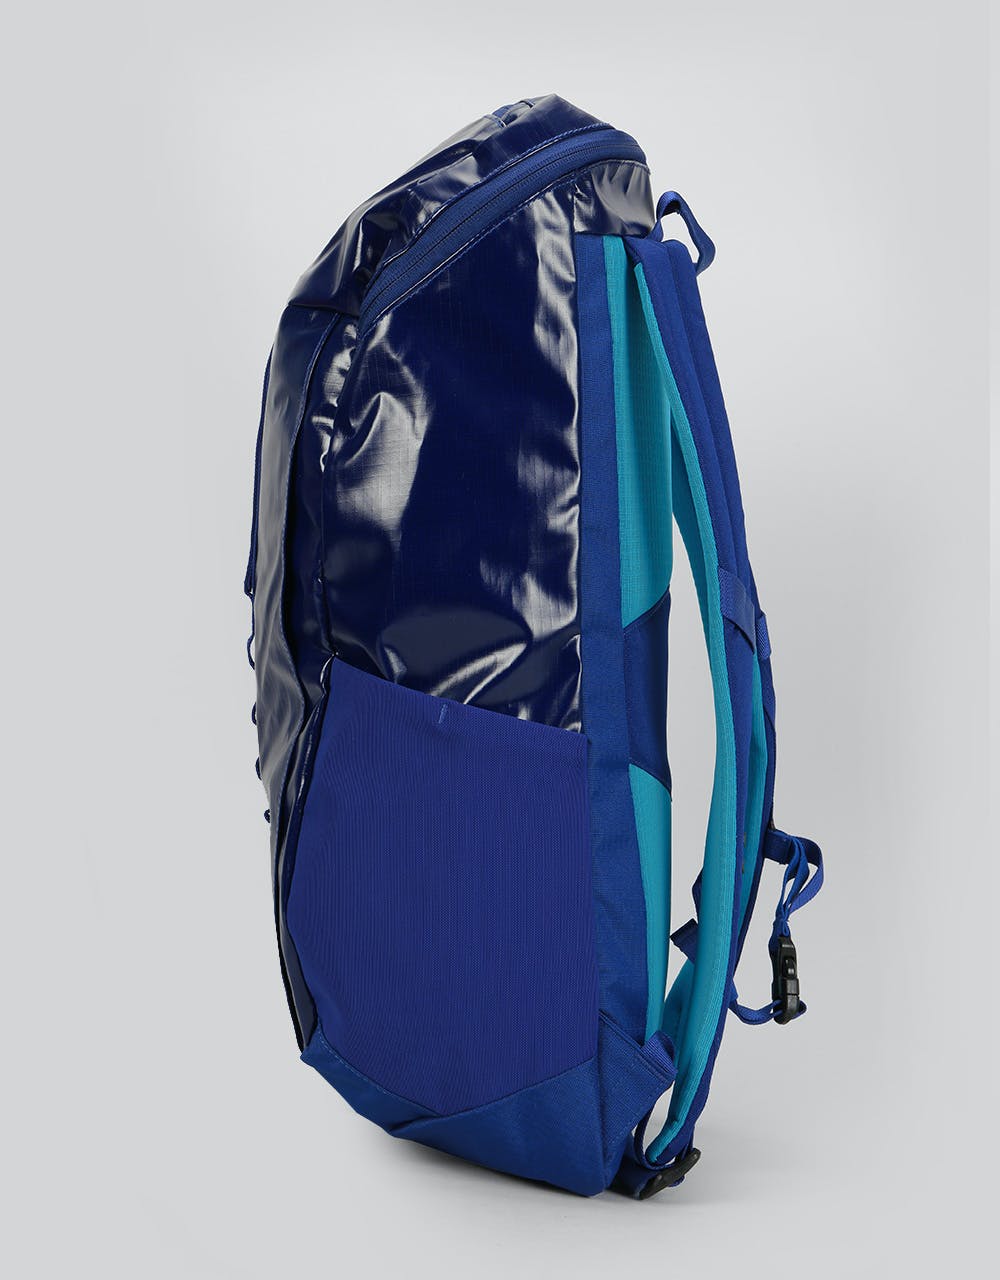 Patagonia Black Hole Pack 25L Backpack - Cobalt Blue